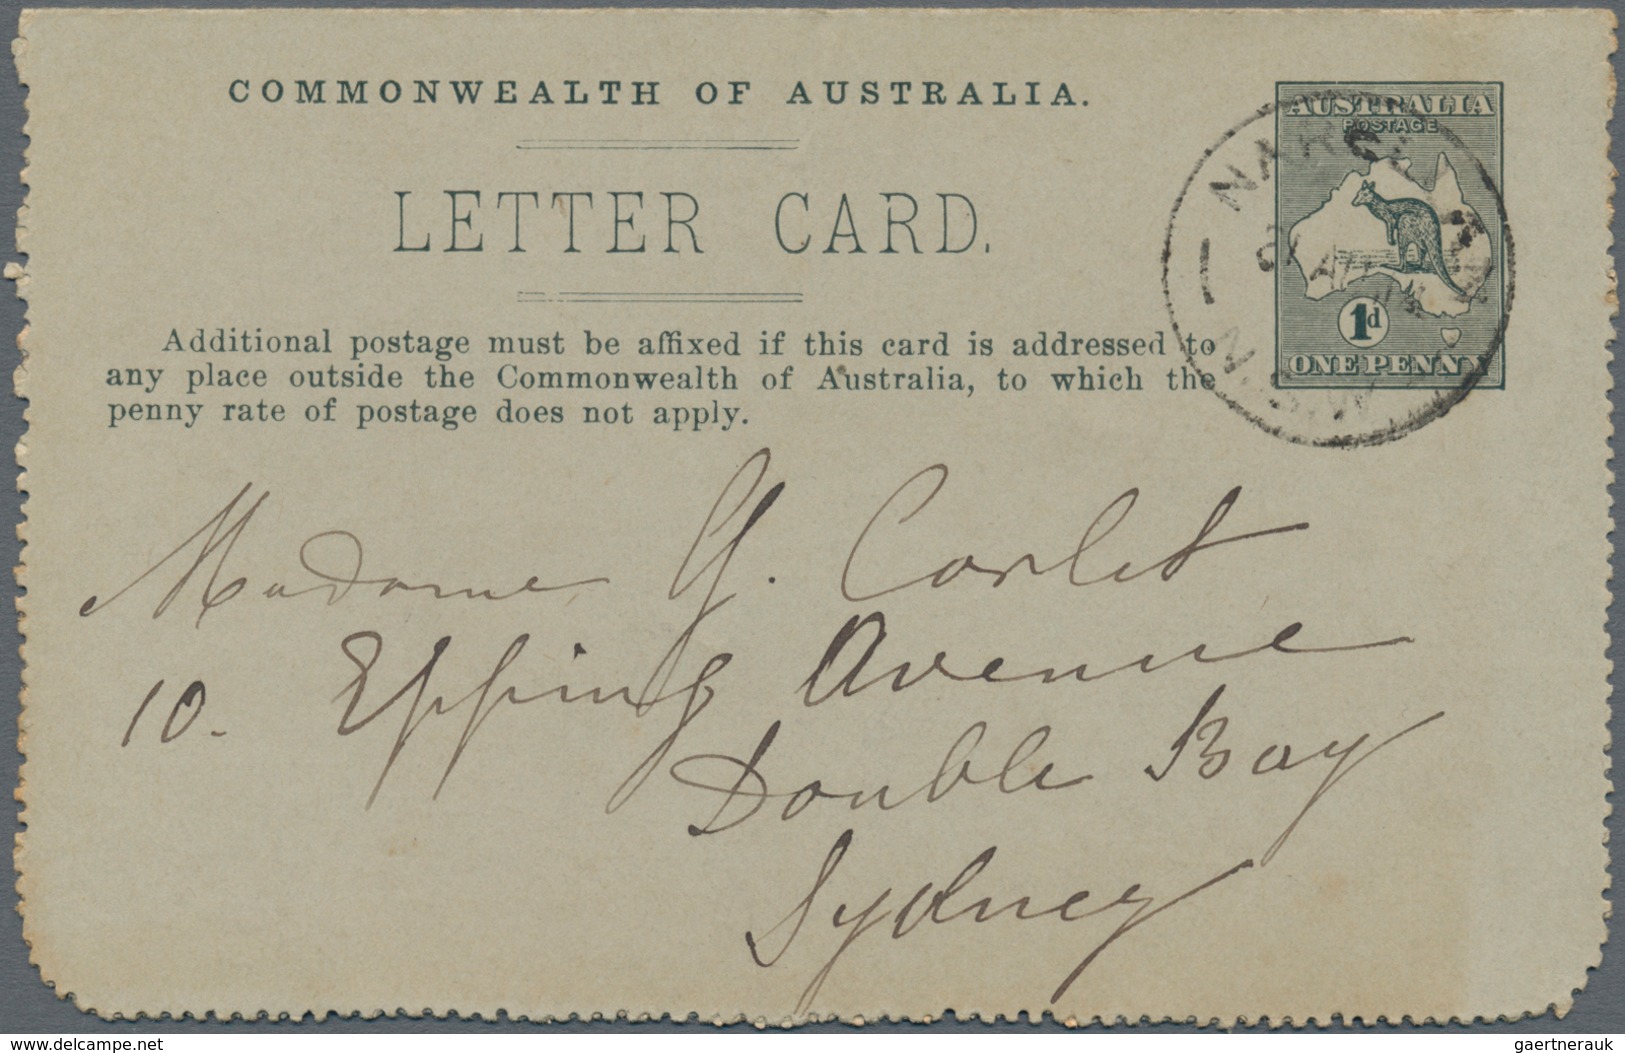 Australien - Ganzsachen: 1913/1916, six lettercards incl. four Kangaroos 1d. with views 'HUONVILLE T